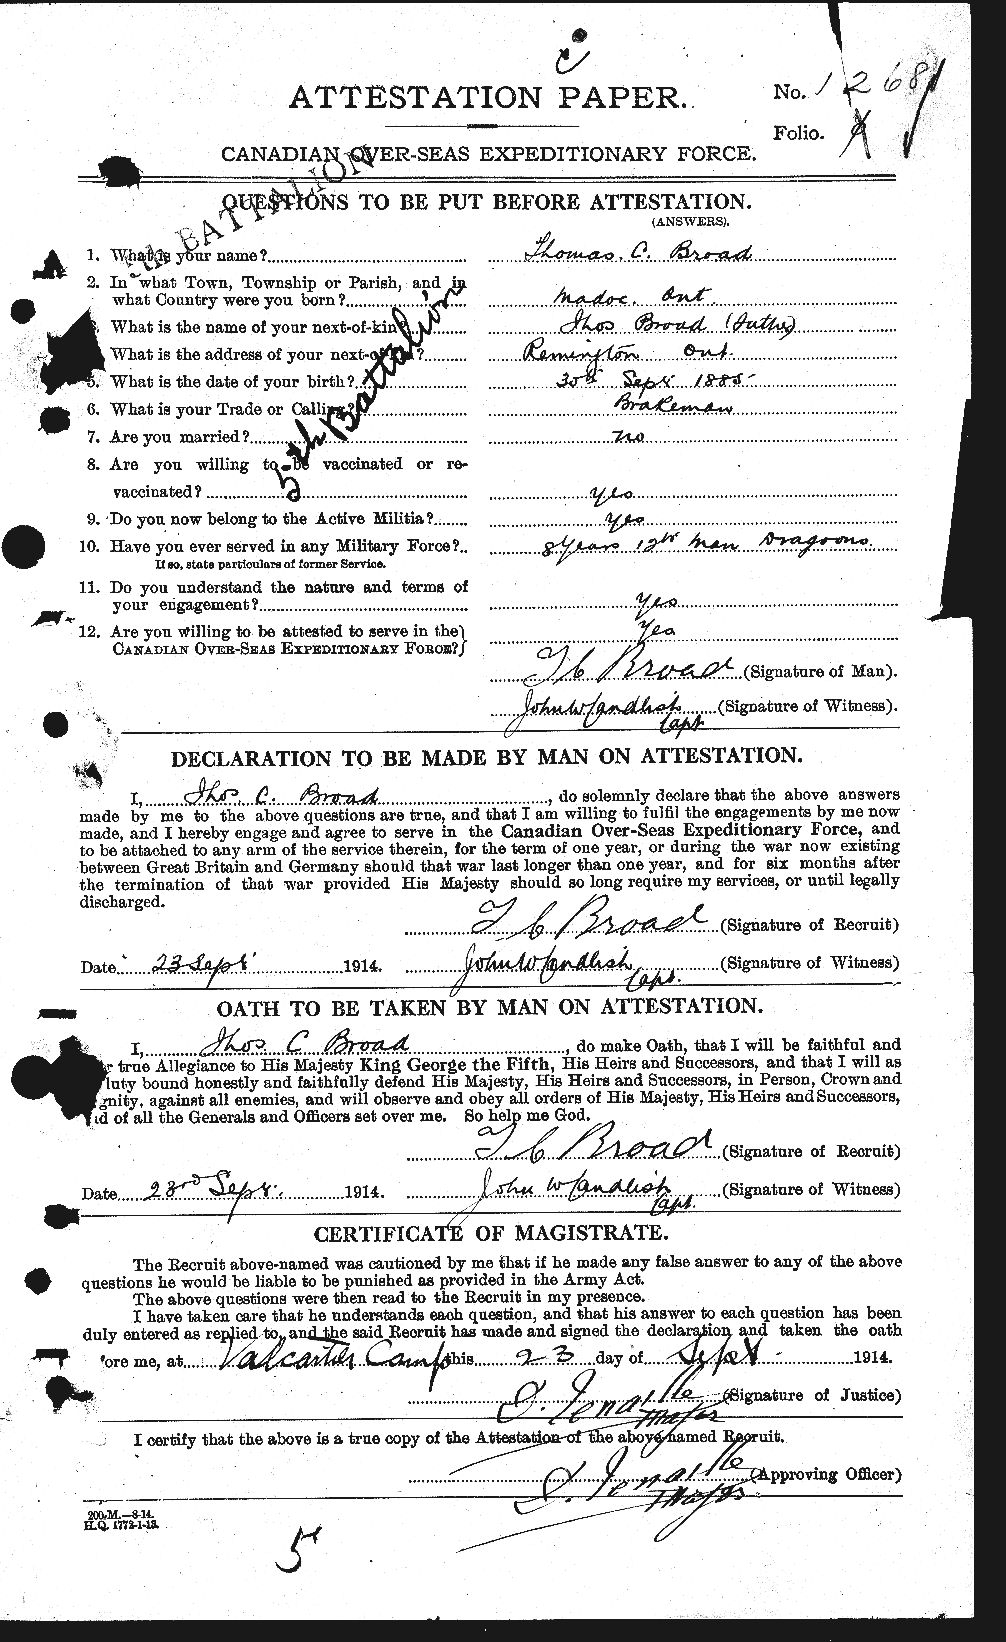 Dossiers du Personnel de la Première Guerre mondiale - CEC 262924a